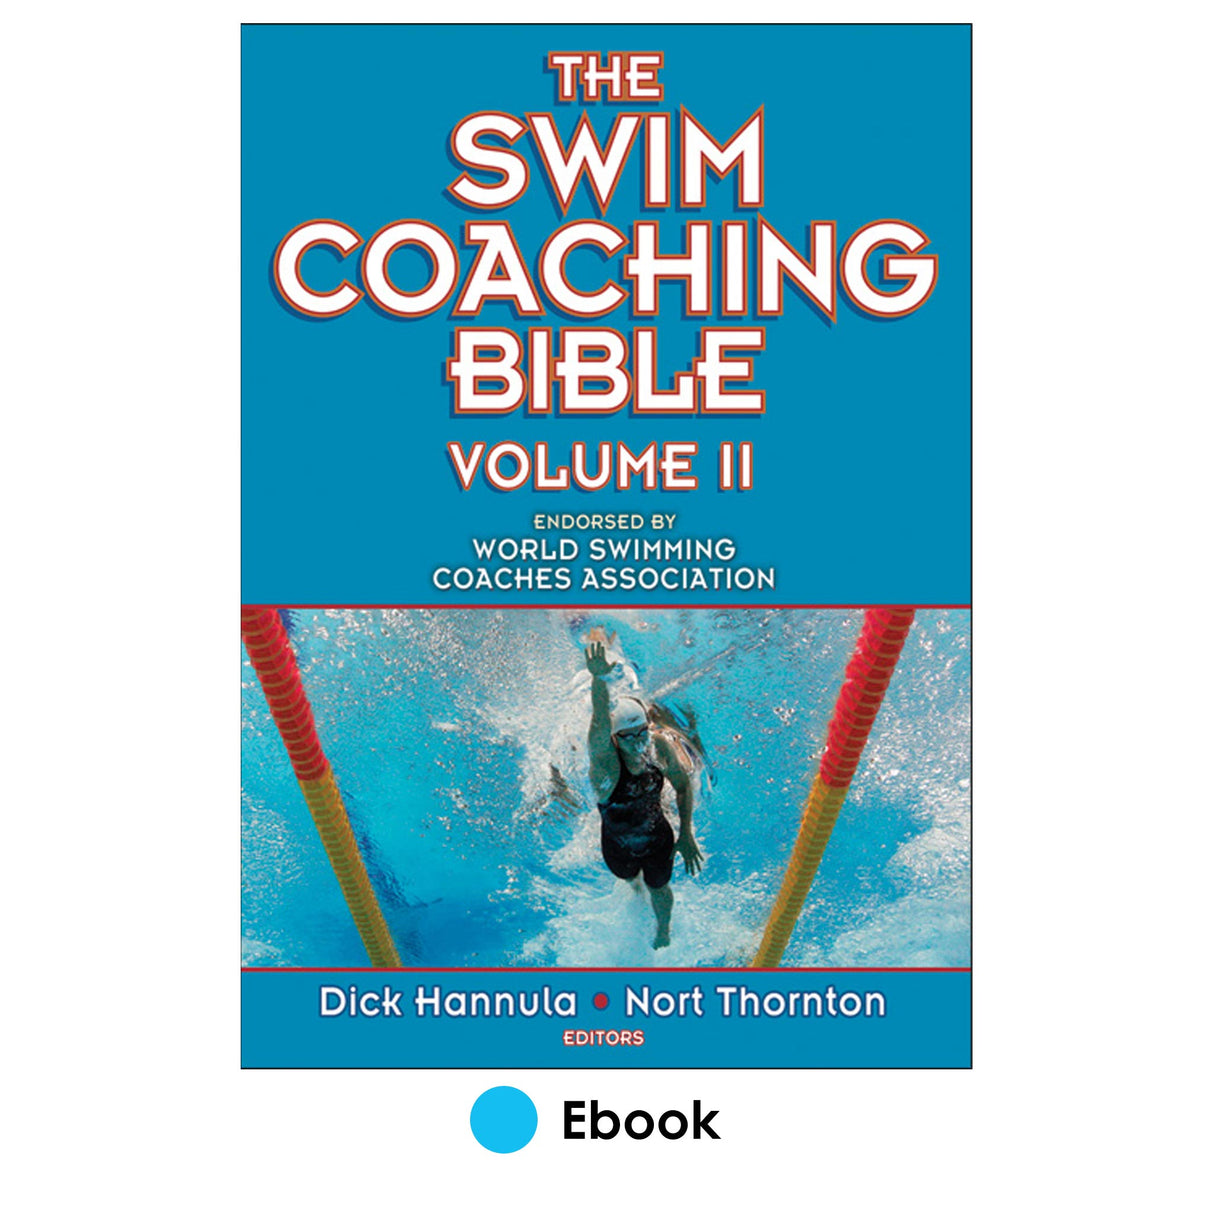 Swim Coaching Bible Volume II PDF, The